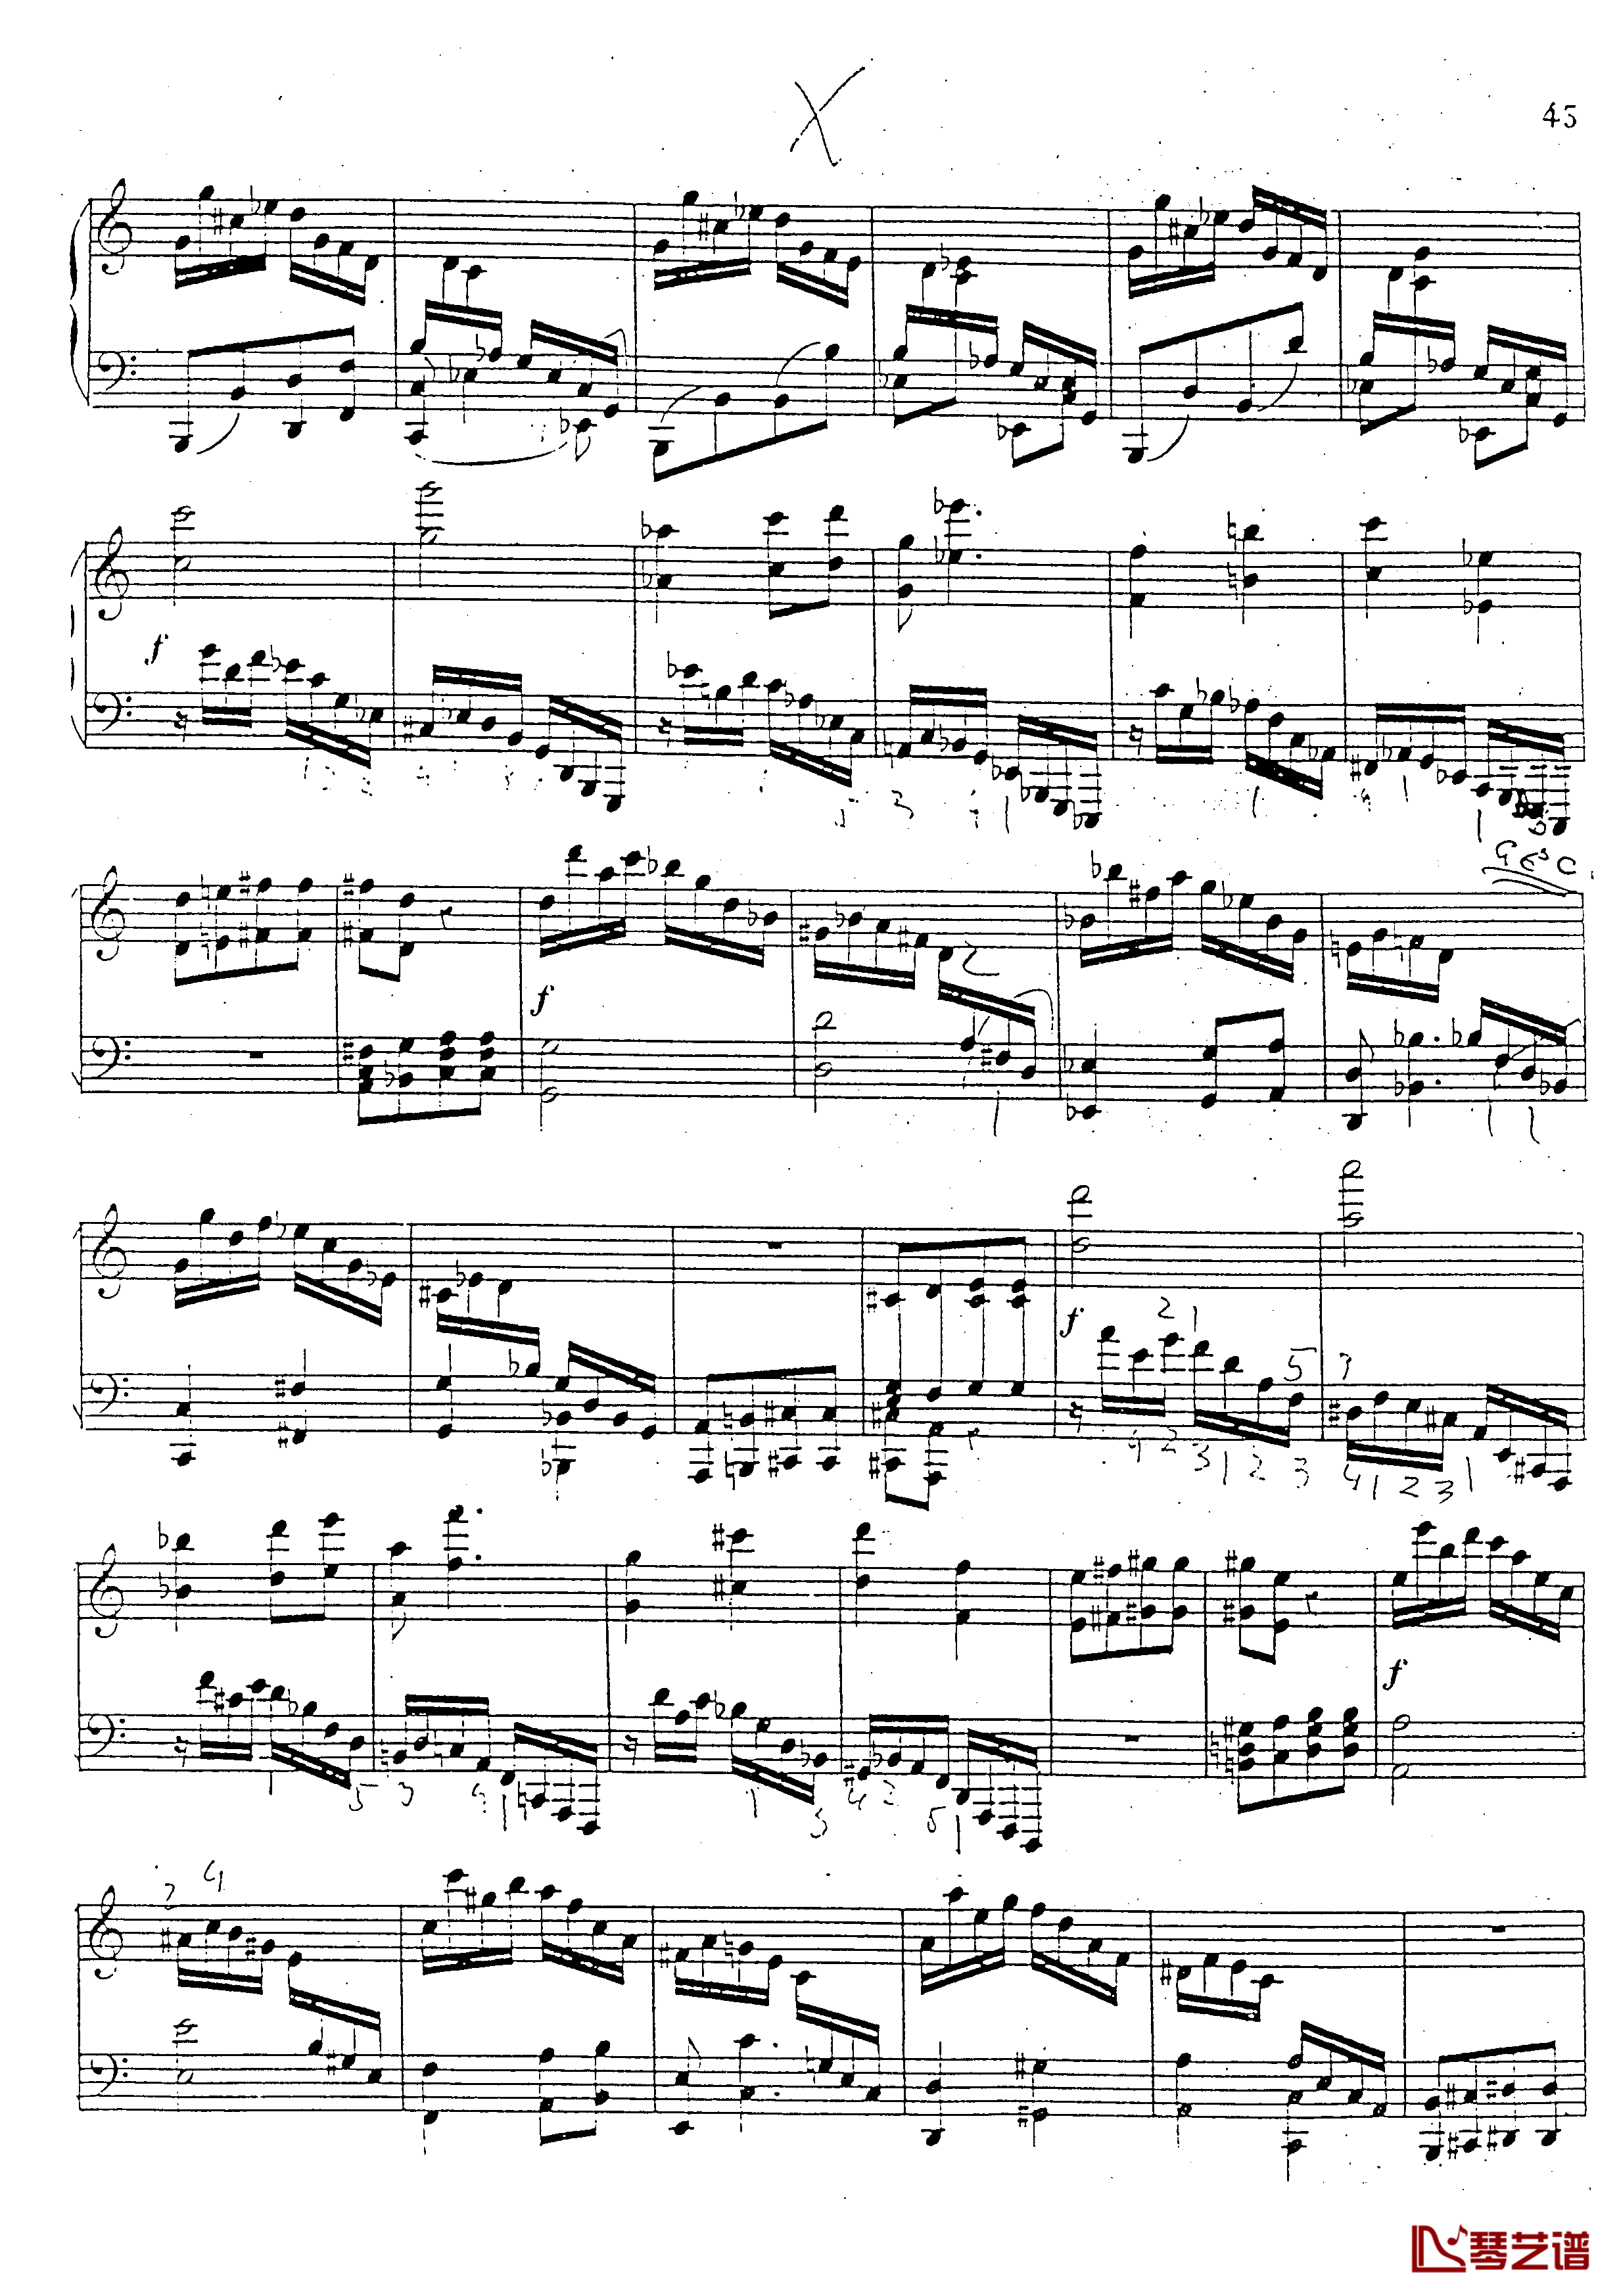 a小调第四钢琴奏鸣曲钢琴谱-安东 鲁宾斯坦- Op.10044